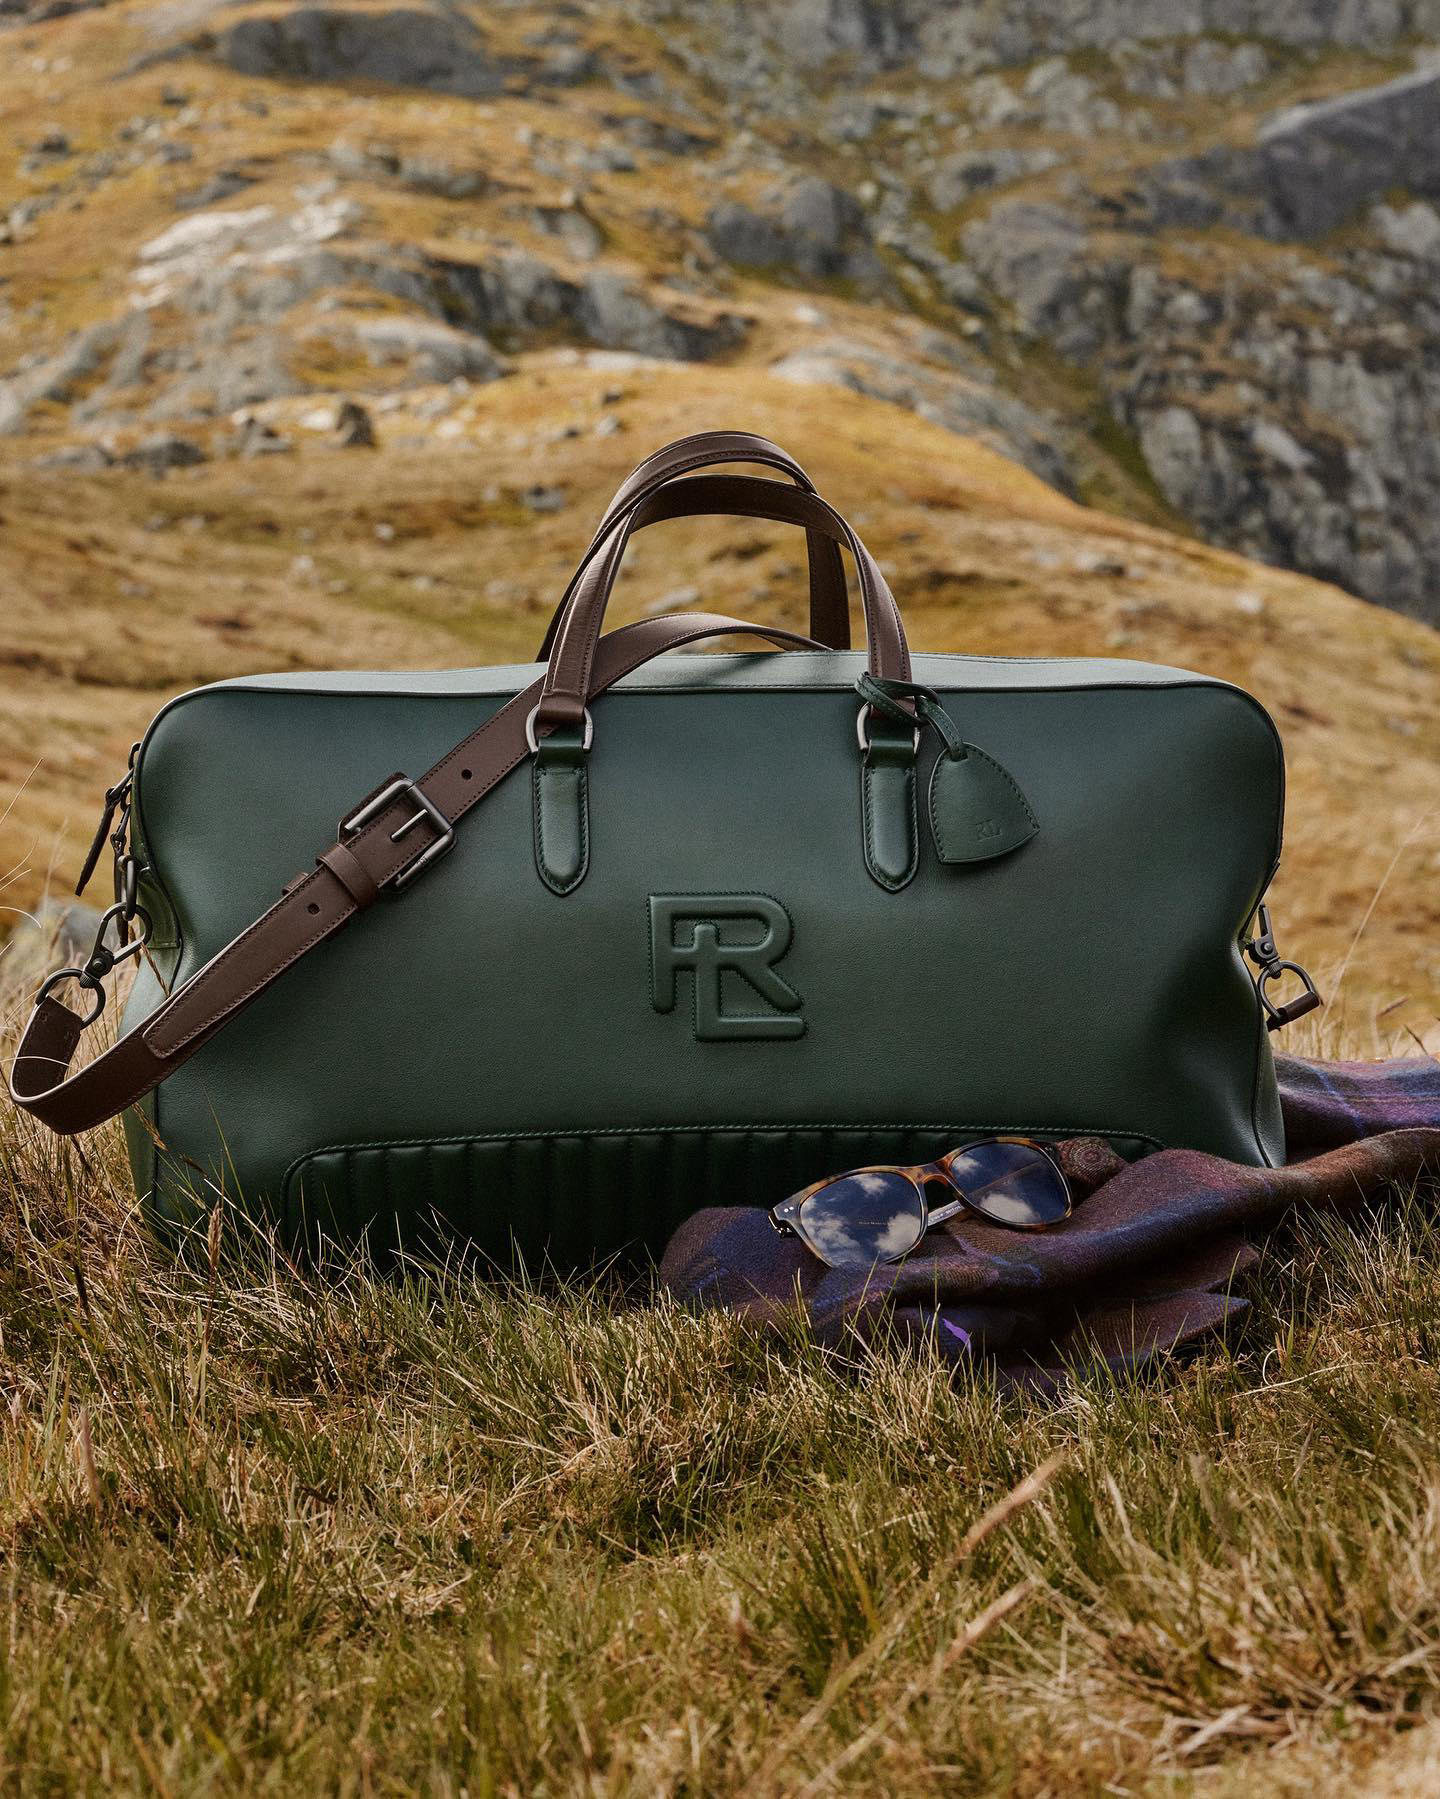 image  1 Ralph Lauren - The Quilted Leather Duffel in deep Racing Green signals #RalphLauren’s fresh interpre